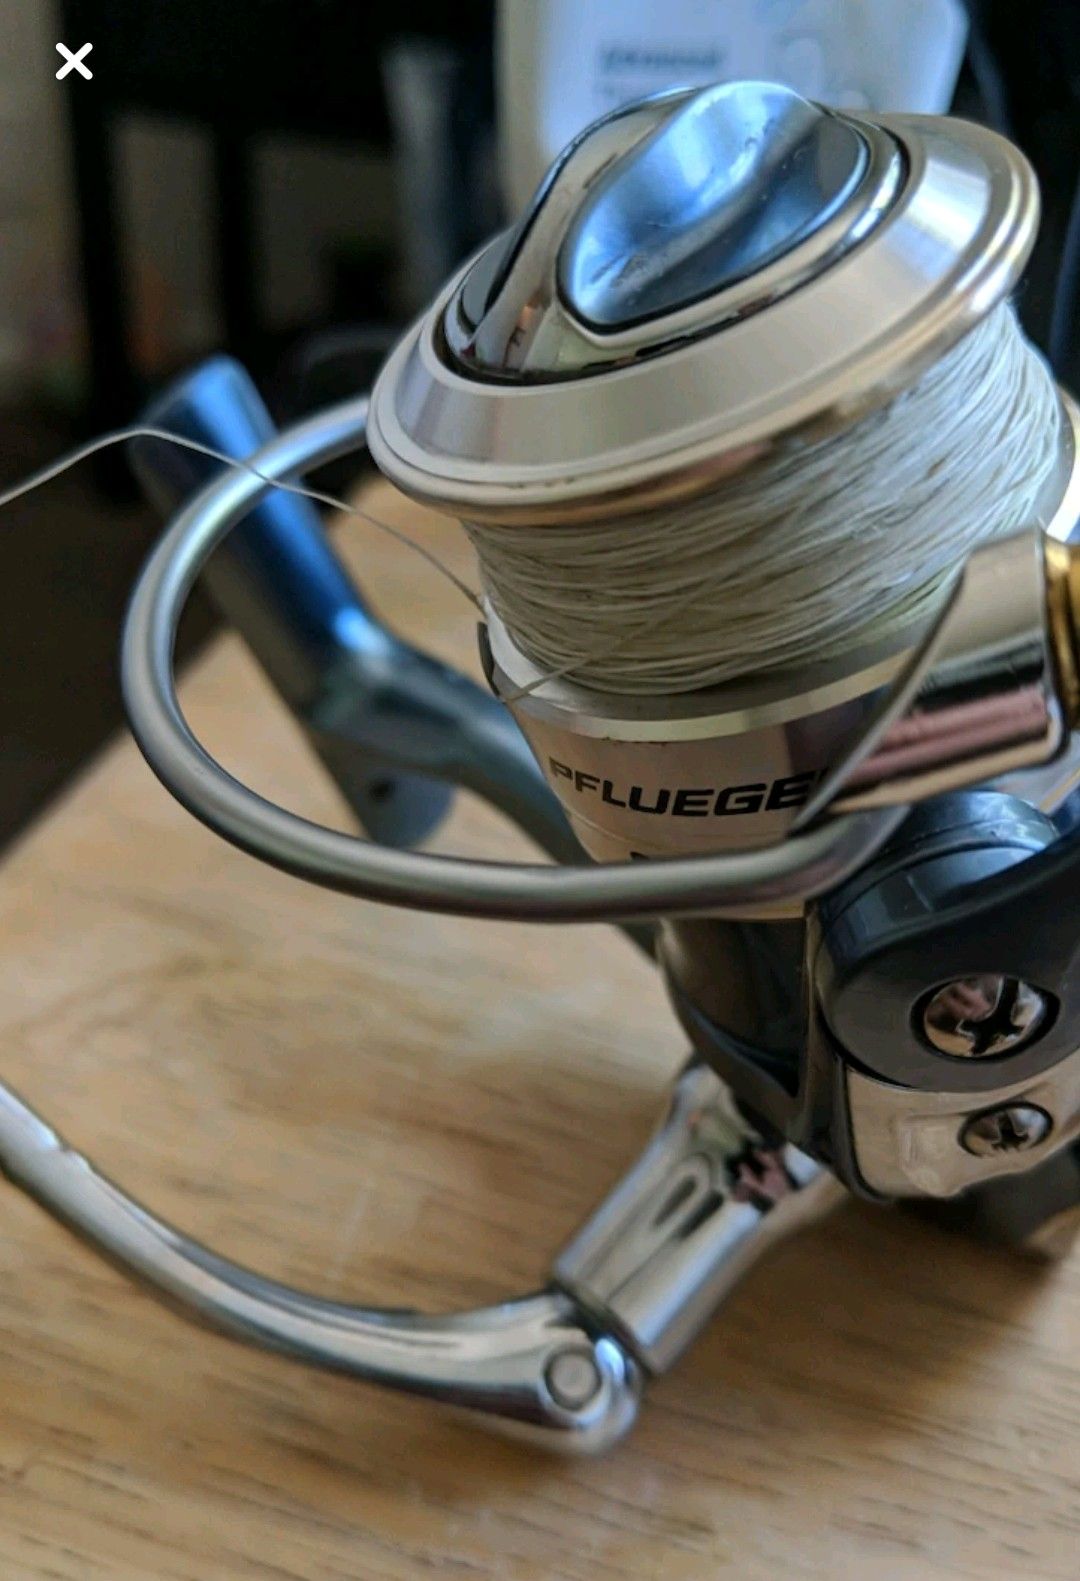 Pflueger 6925 spinning fishing reel 10 bearing SMOOTH